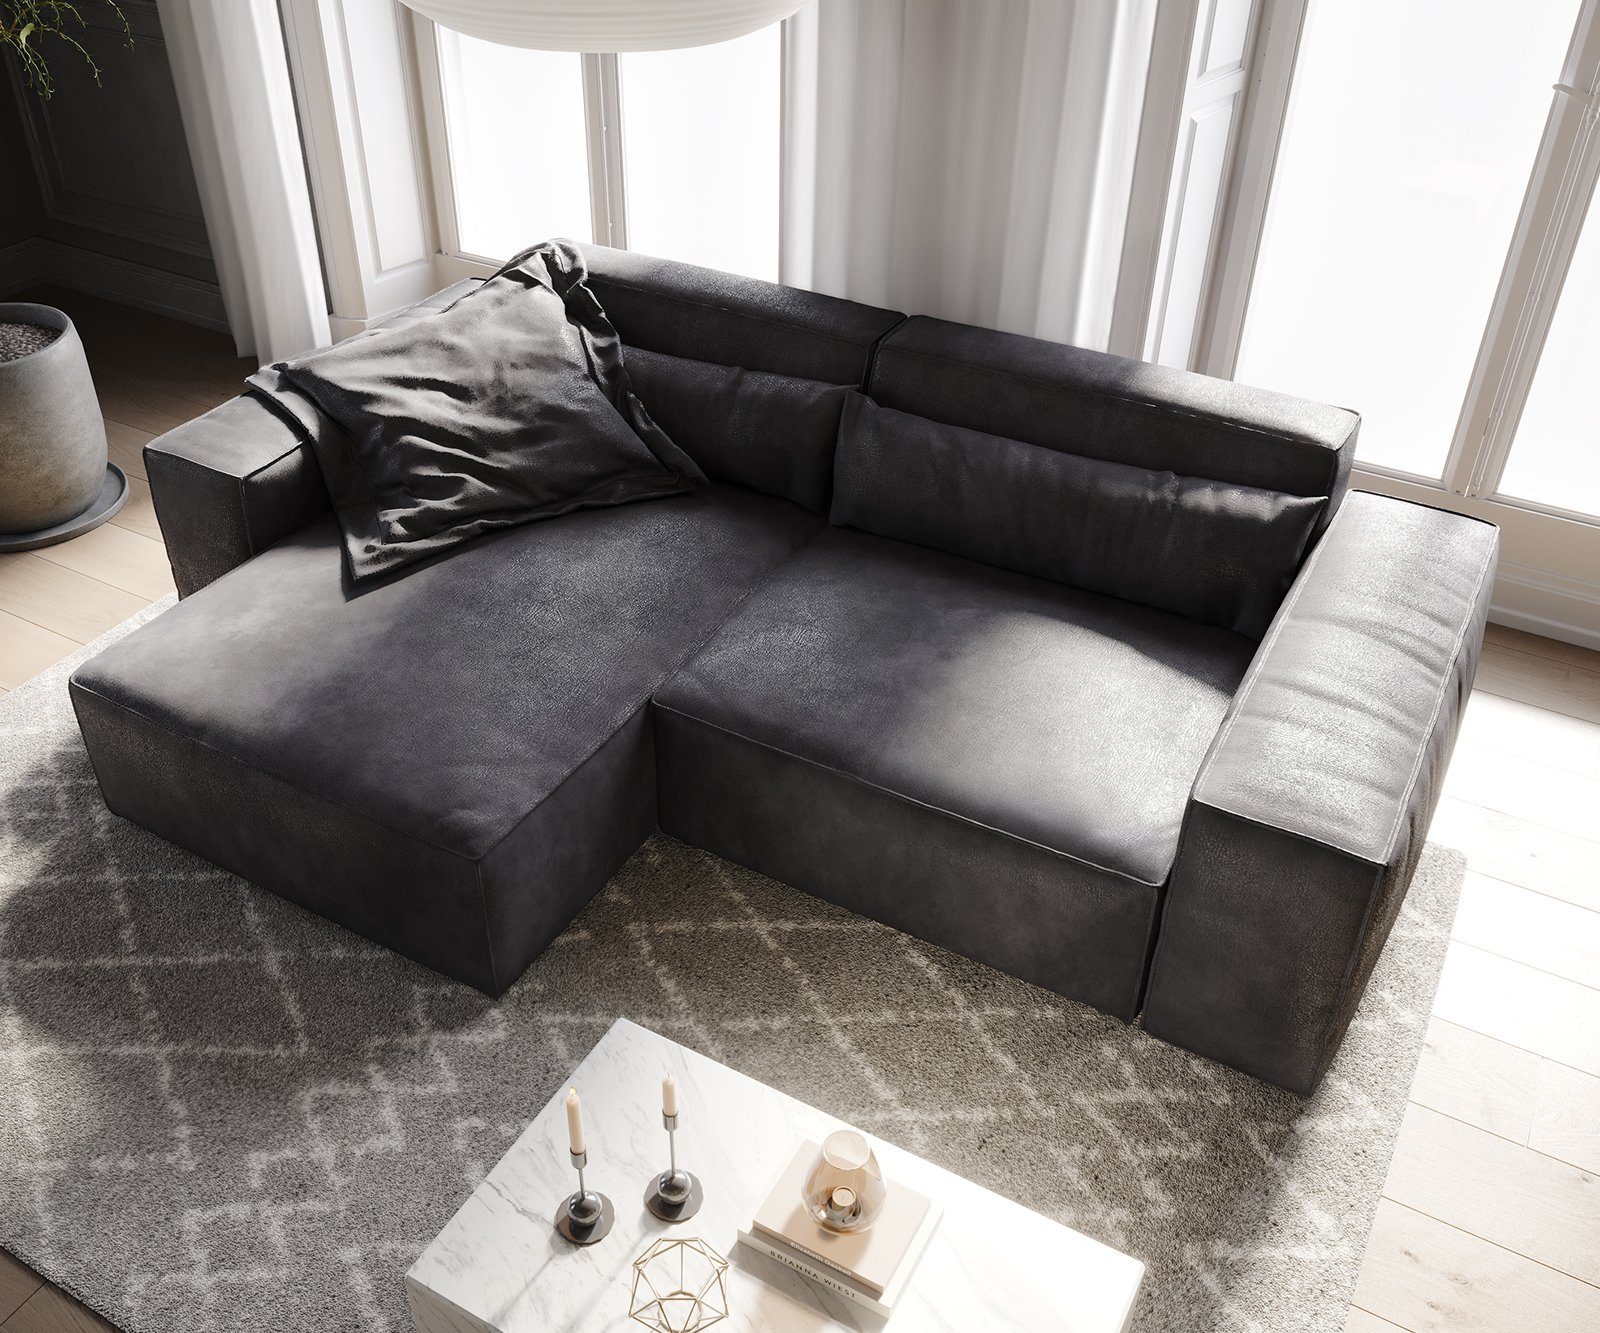 DELIFE Big-Sofa L 260x160 Lederimitat Anthrazit Recamiere variabel cm Sirpio, Vintage